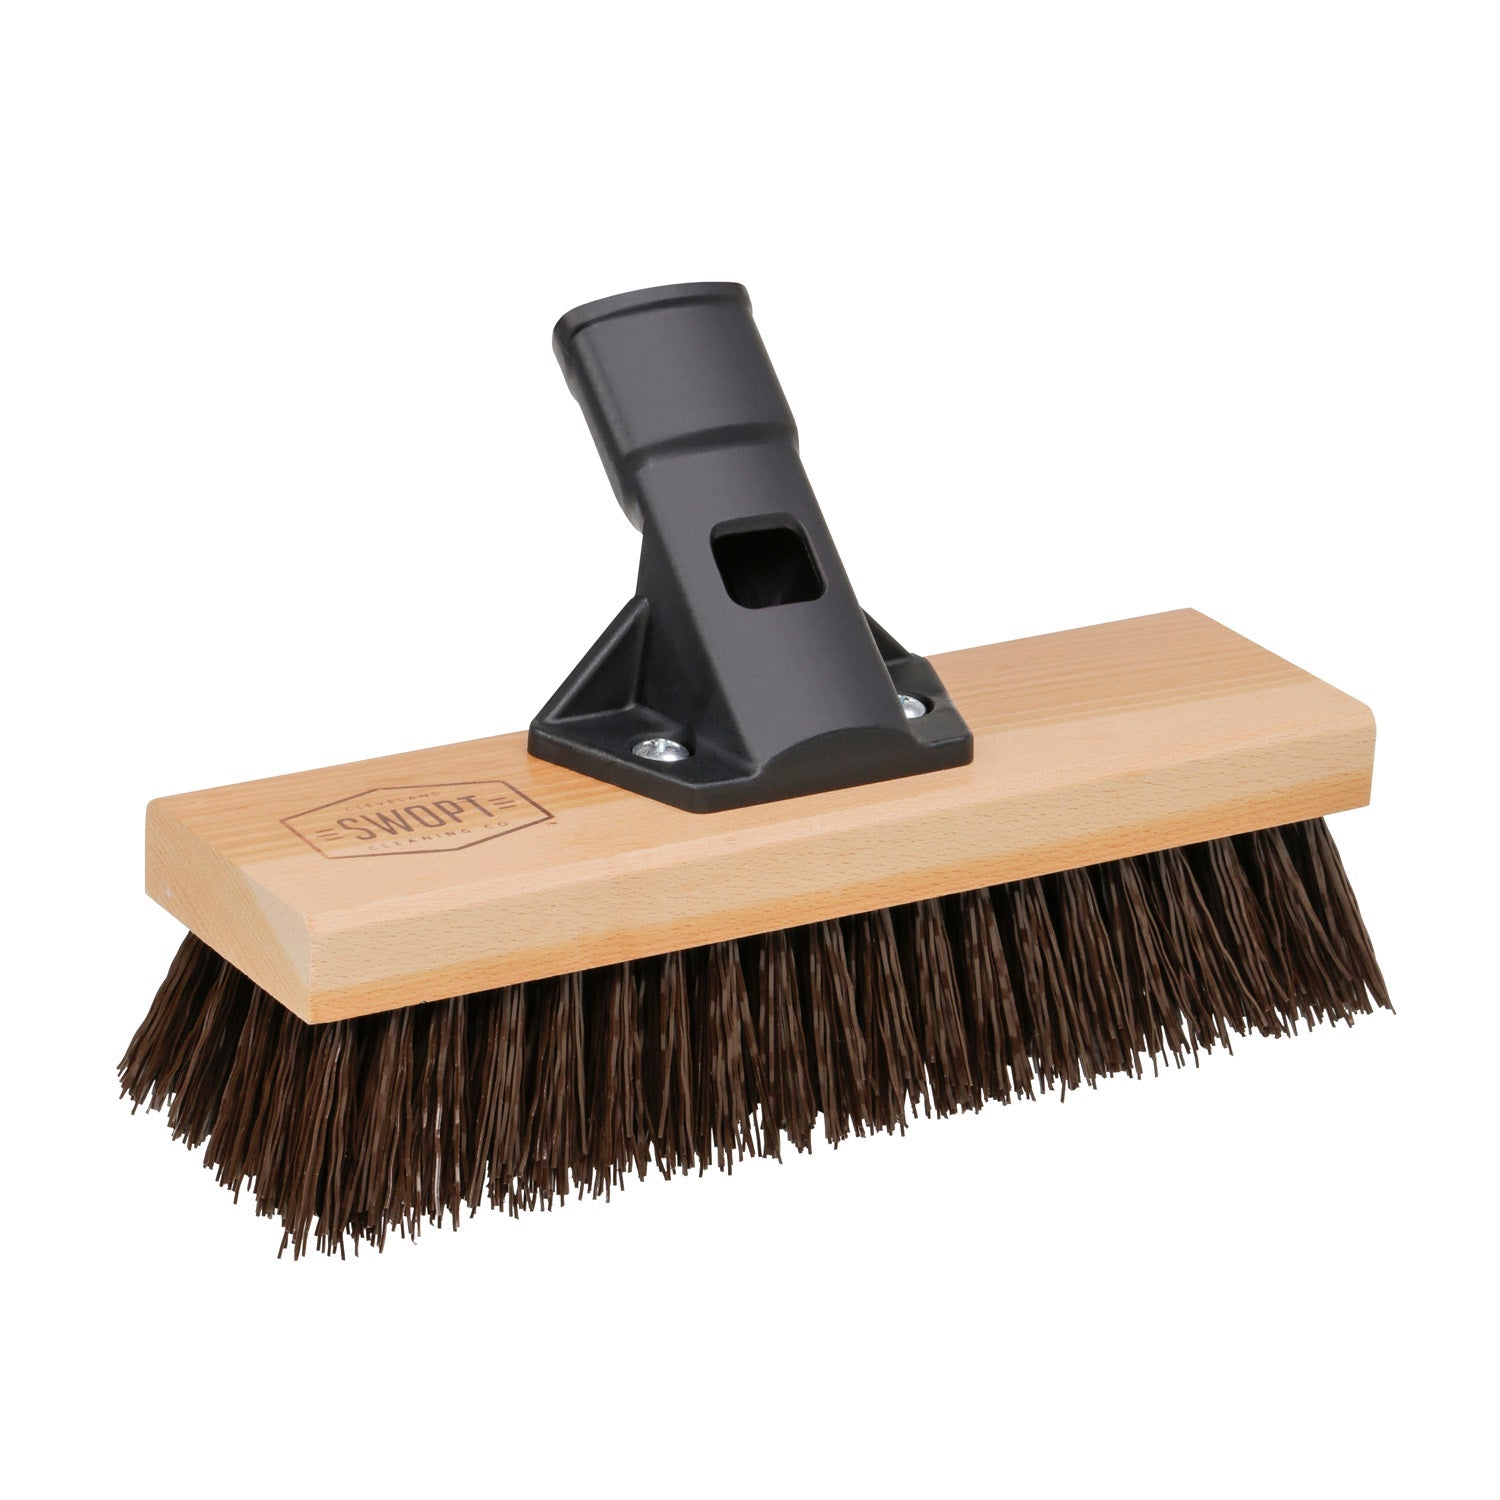 The Superior Deck Cleaning Brush - Hammacher Schlemmer